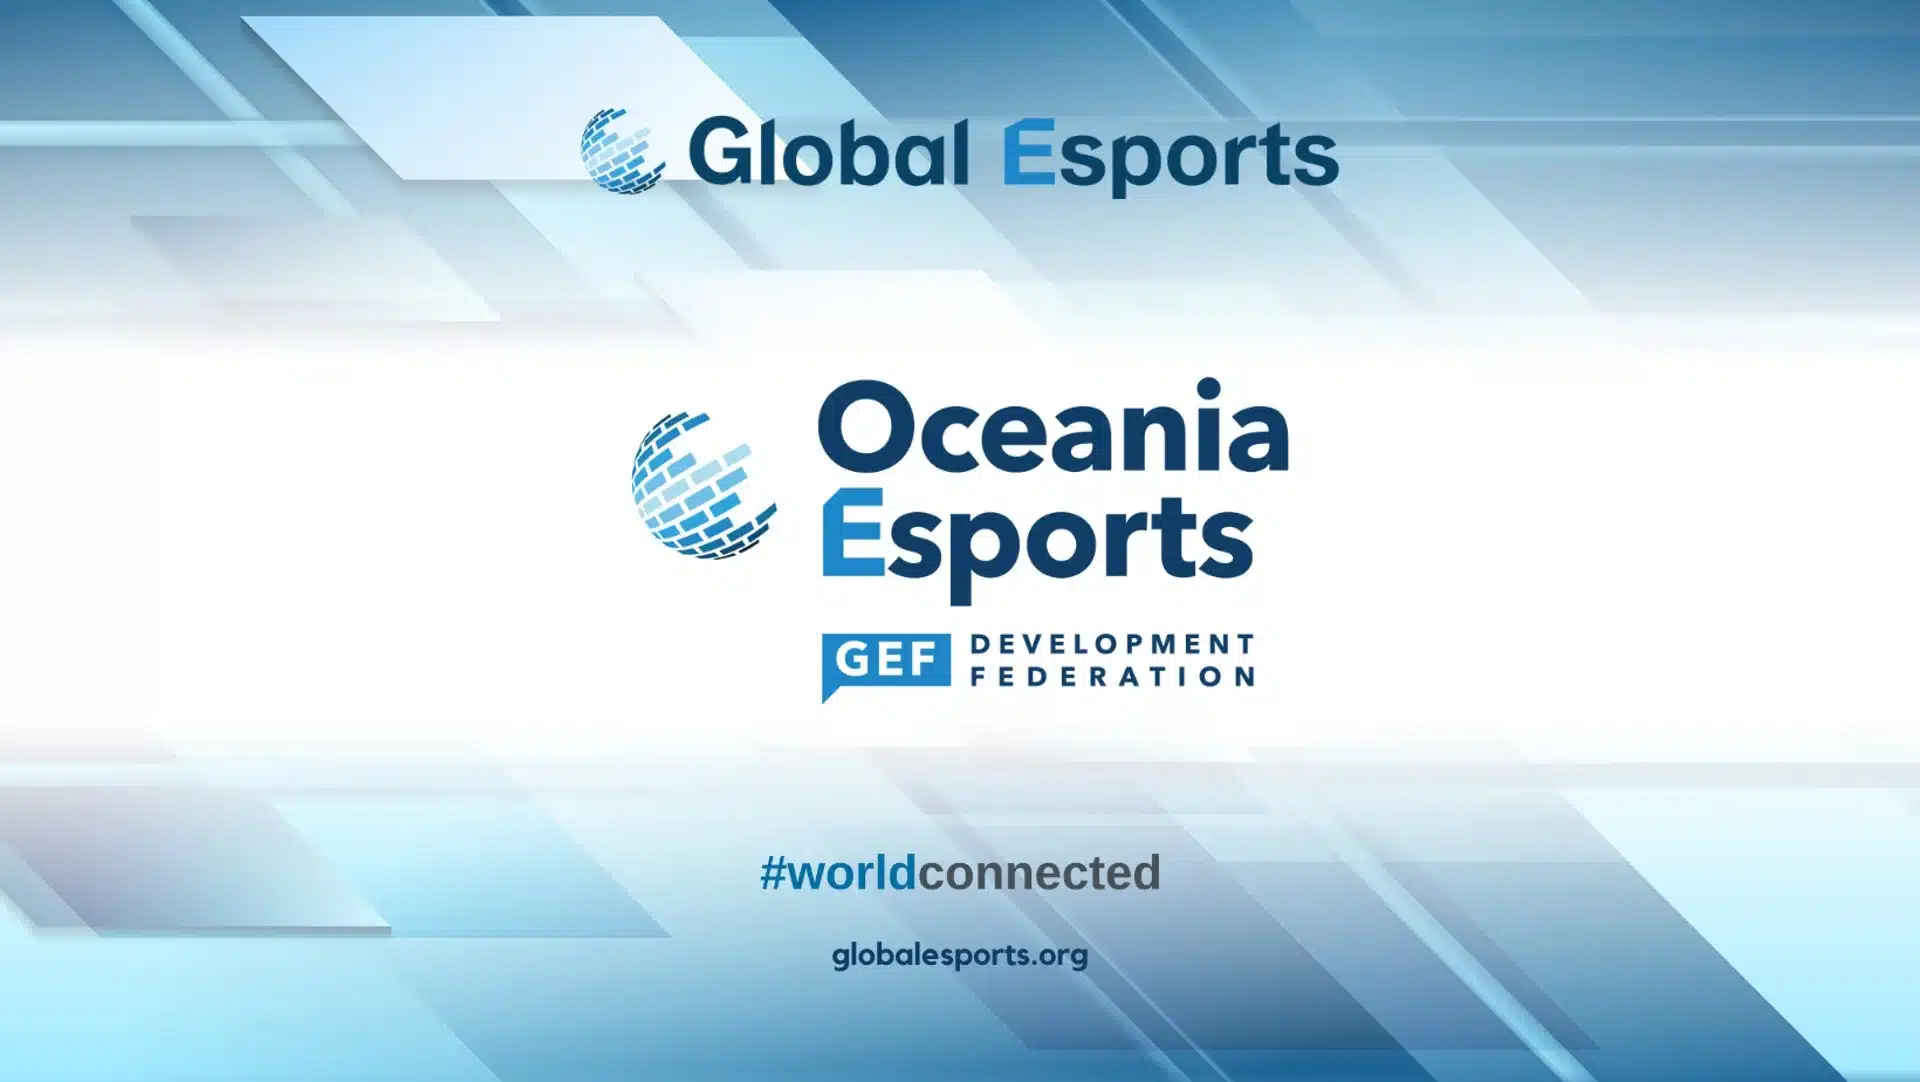 Oceania-Esports-Development-Federation